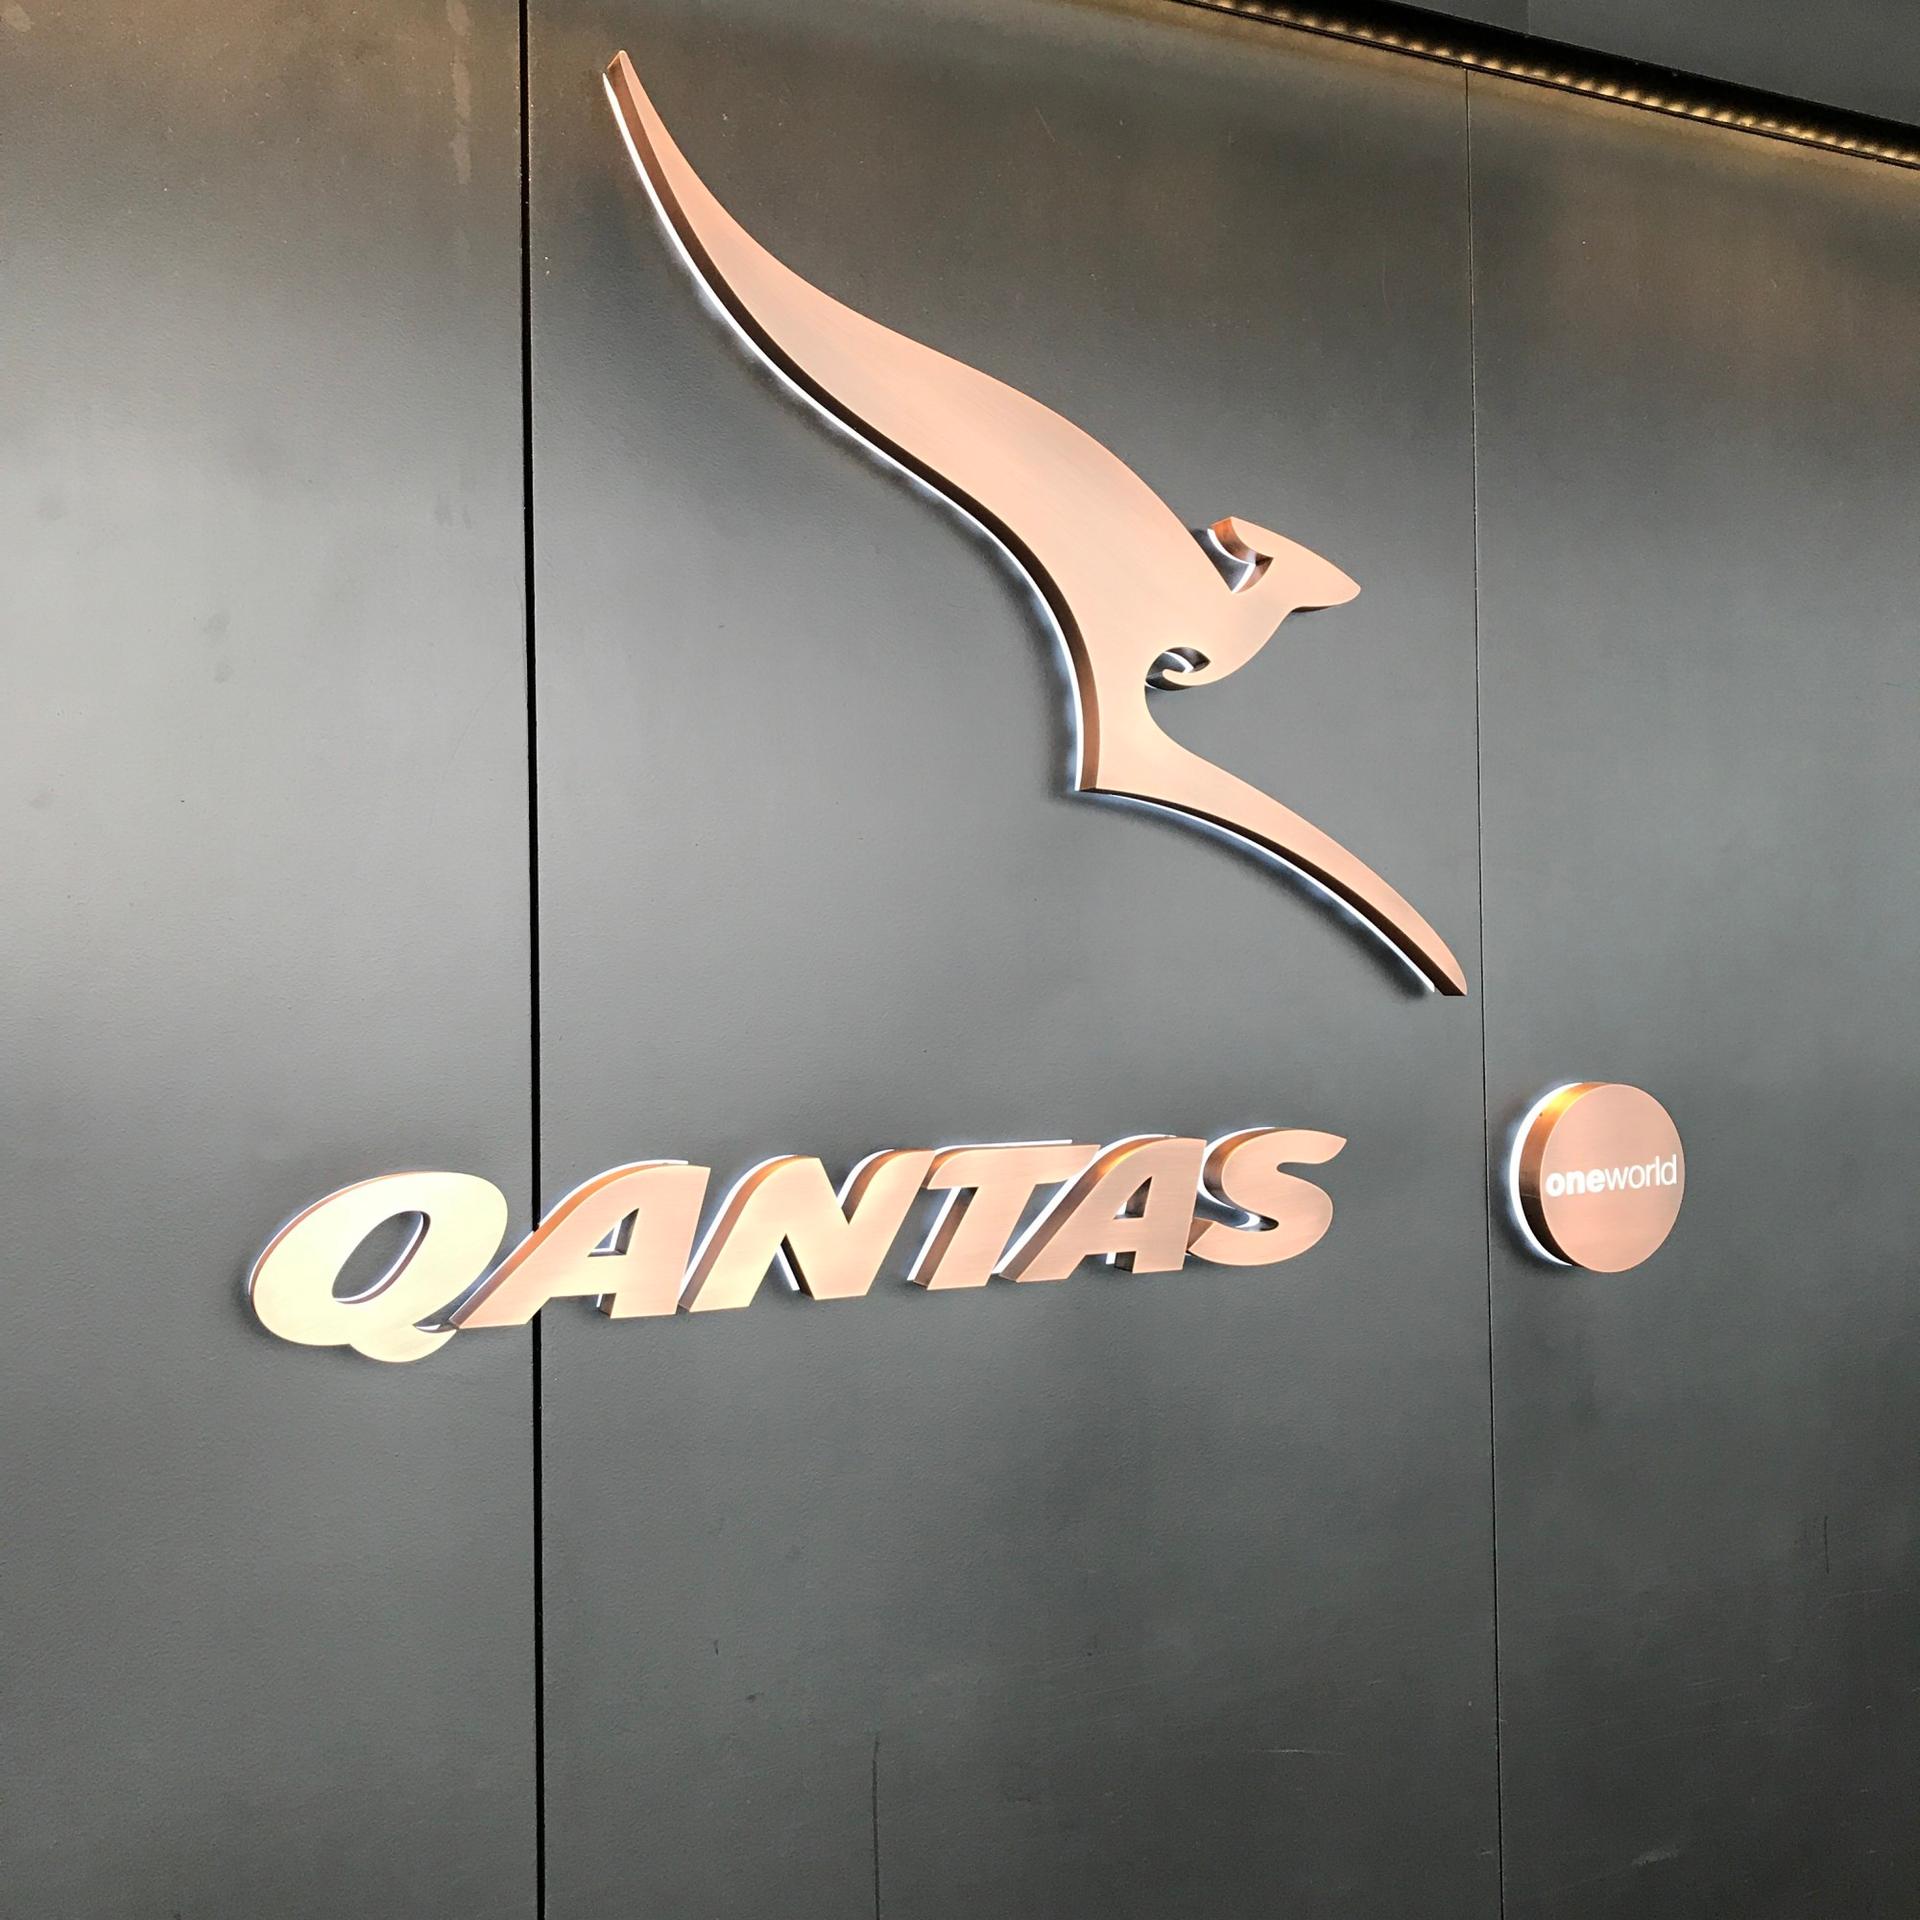 The Qantas Hong Kong Lounge image 72 of 99